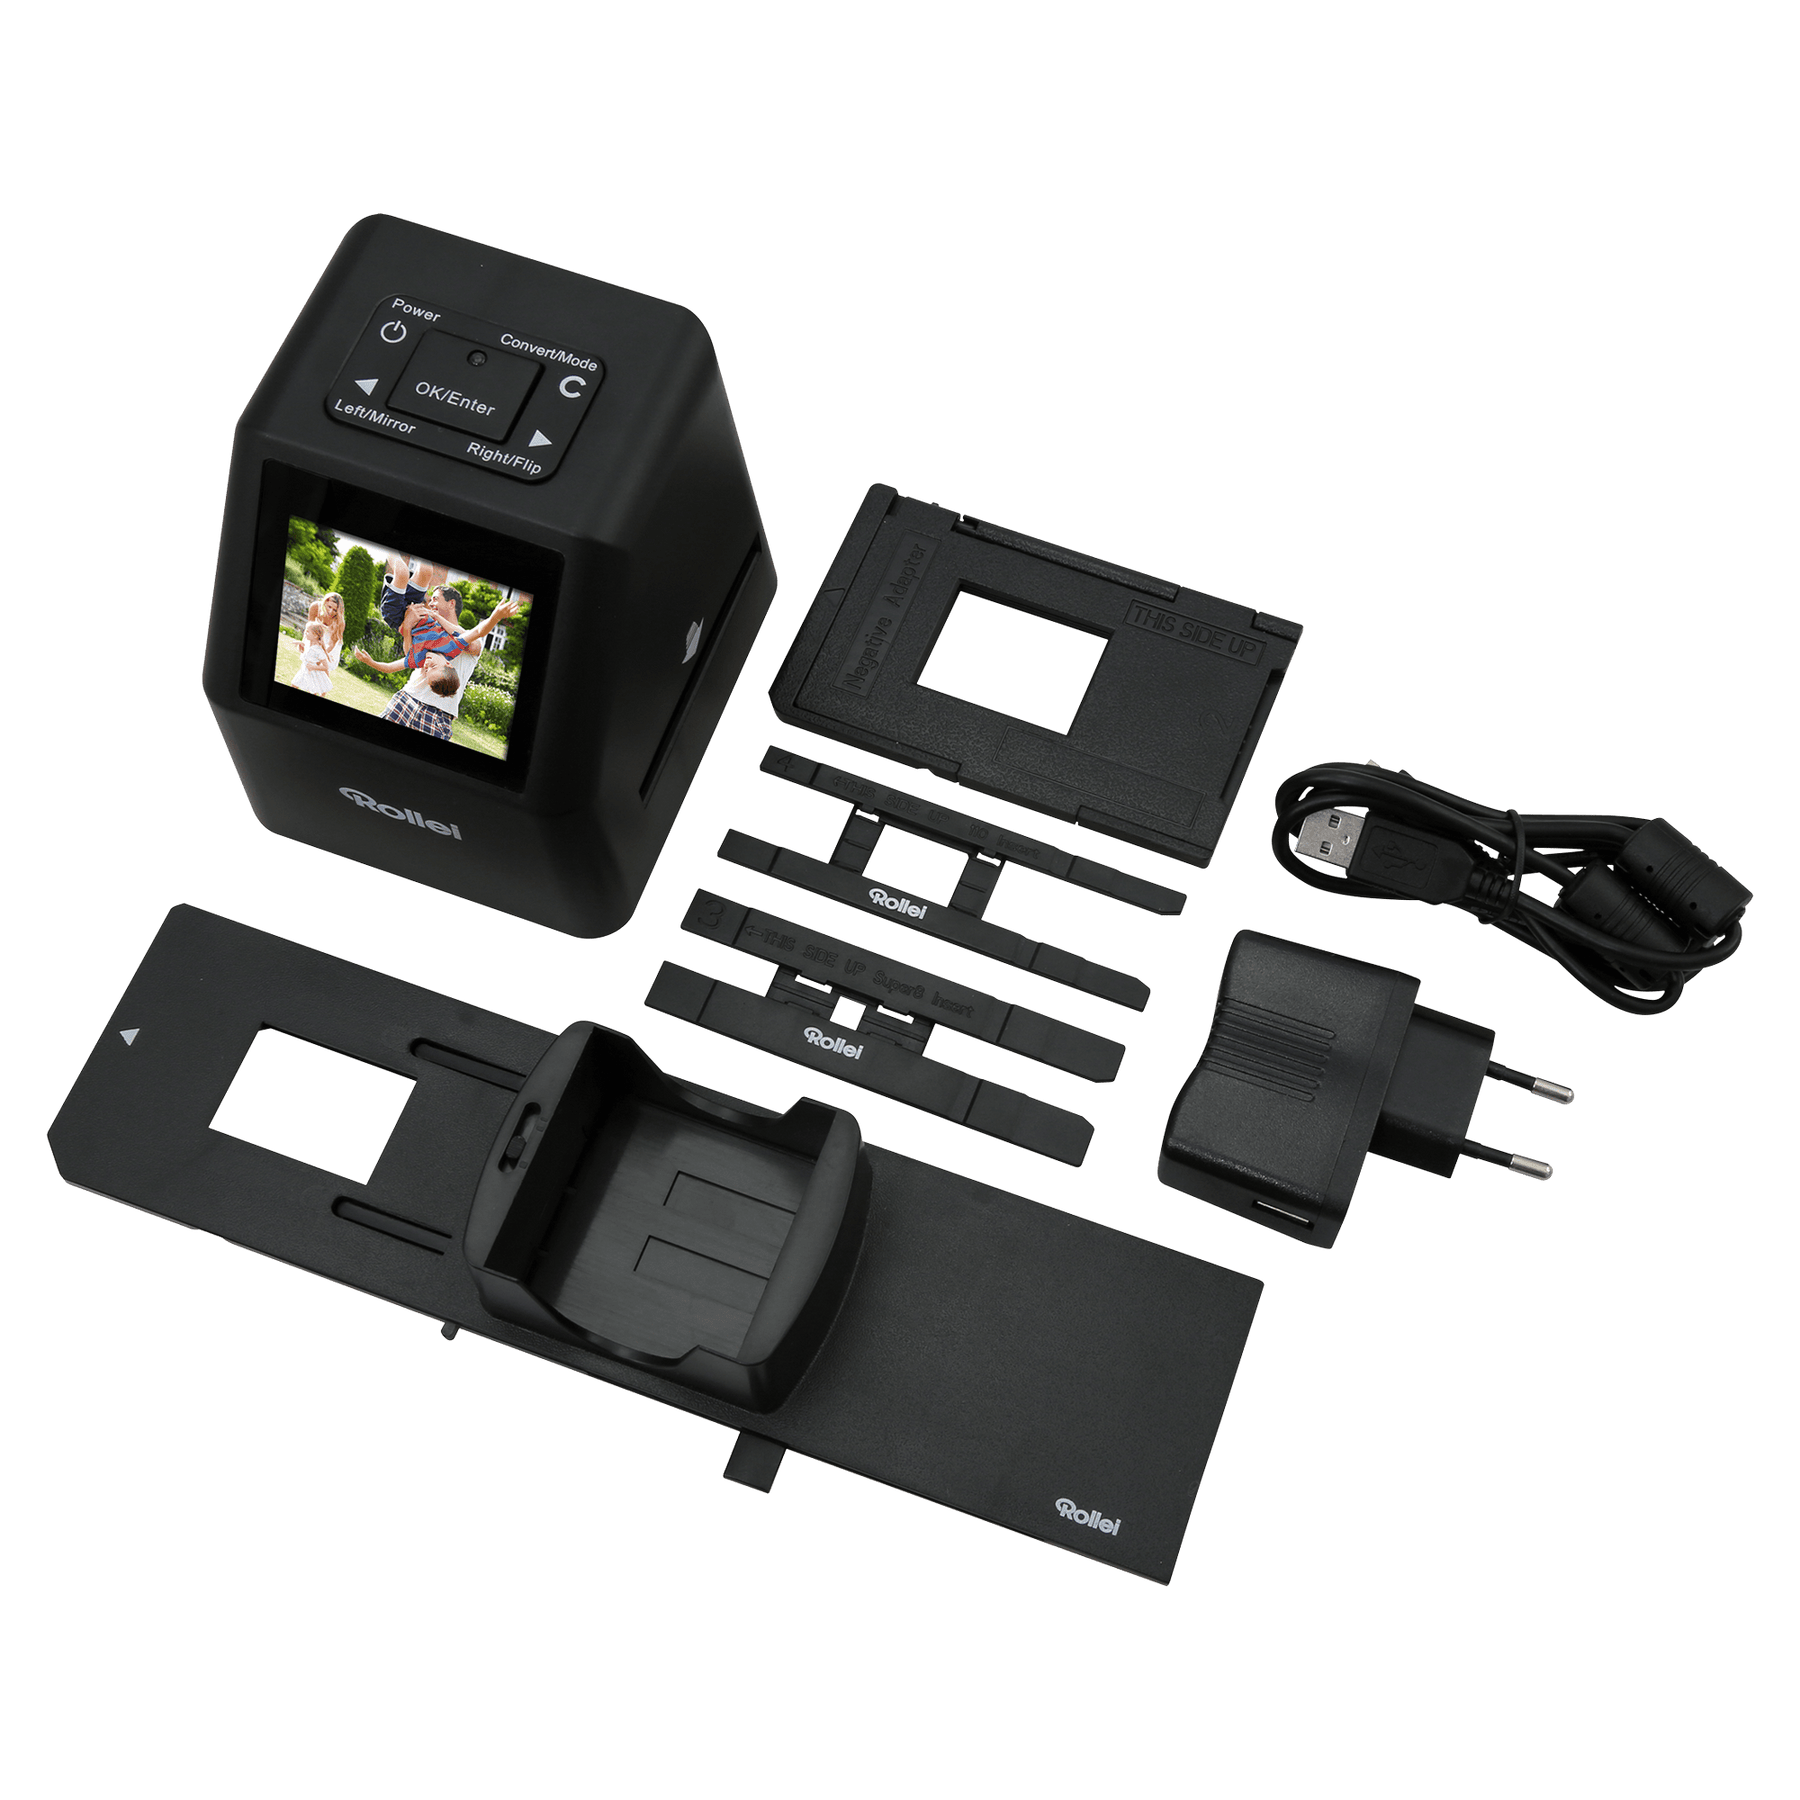 Rollei Equipment DF-S 310 SE Dia-Film-Scanner